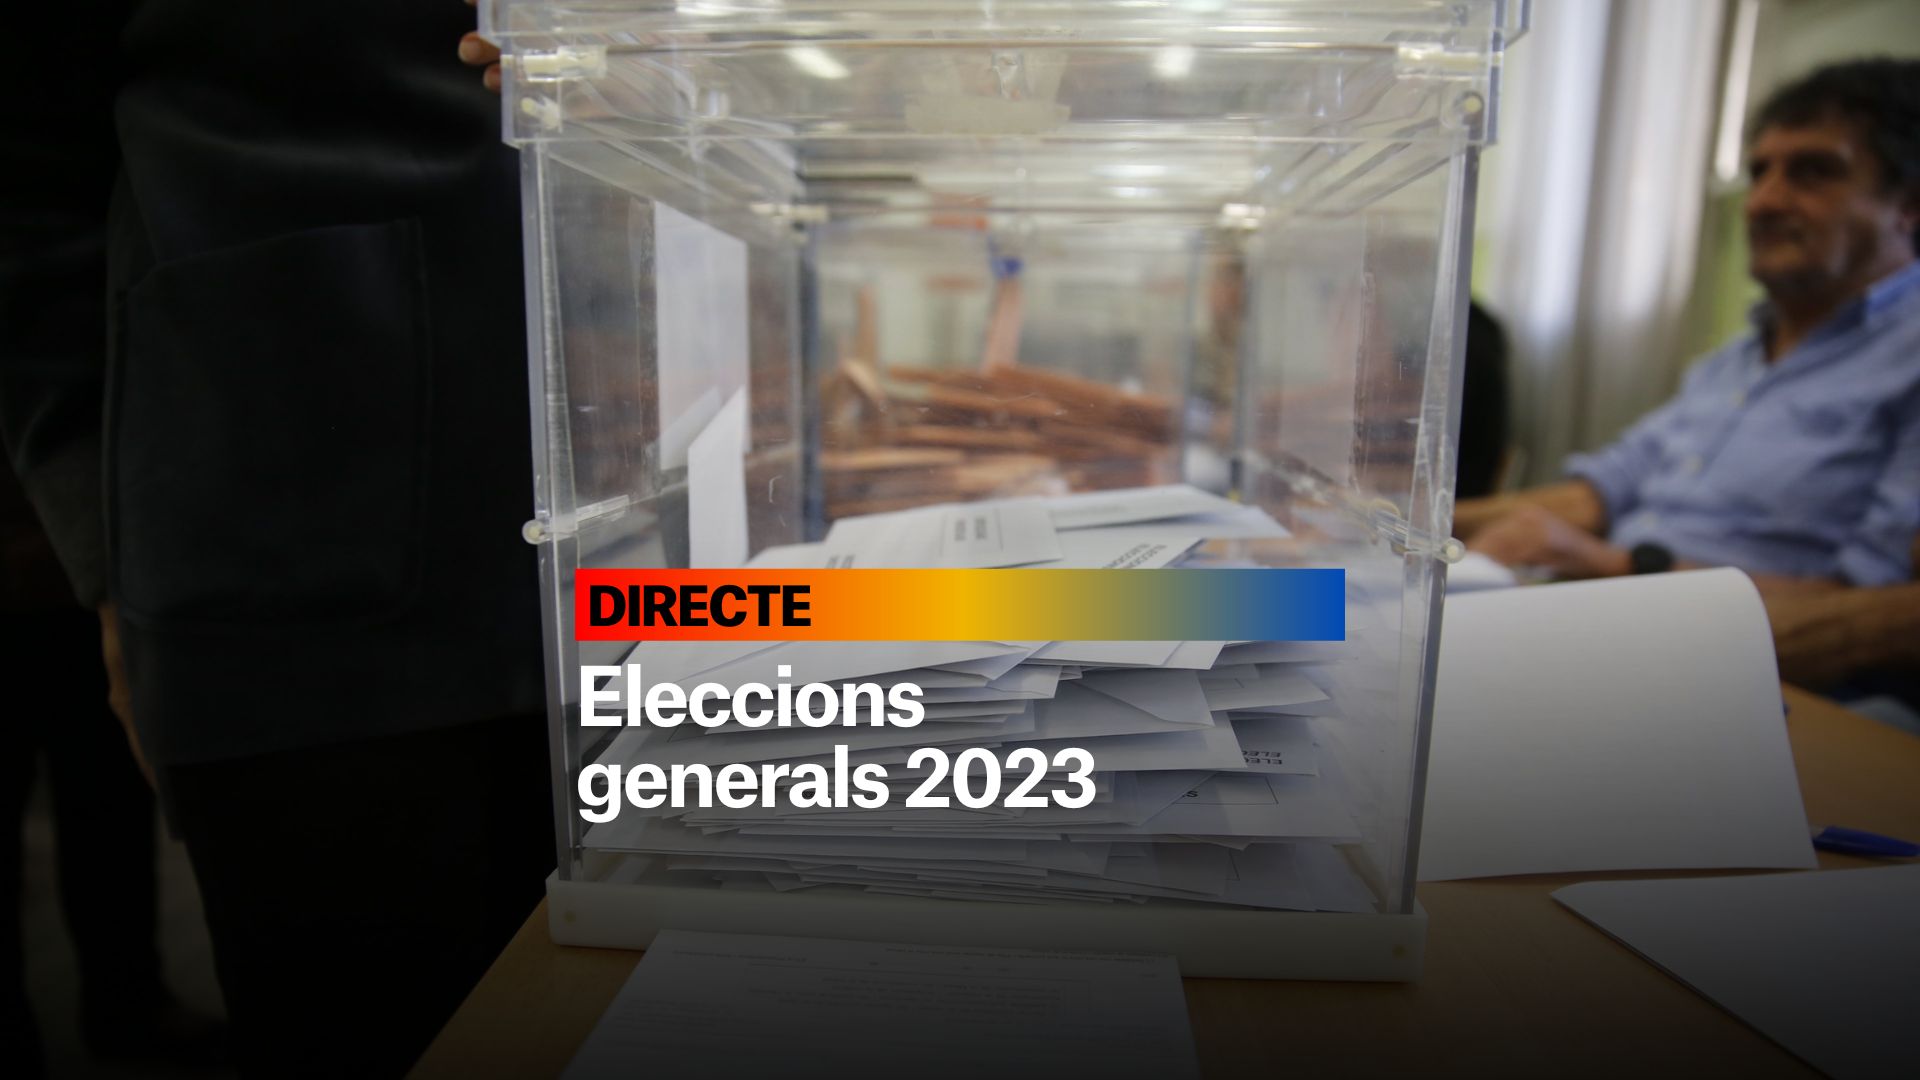 Eleccions generals 2023, DIRECTE | Jornada de reflexió i última hora de Sánchez, Feijóo, Abascal y Díaz